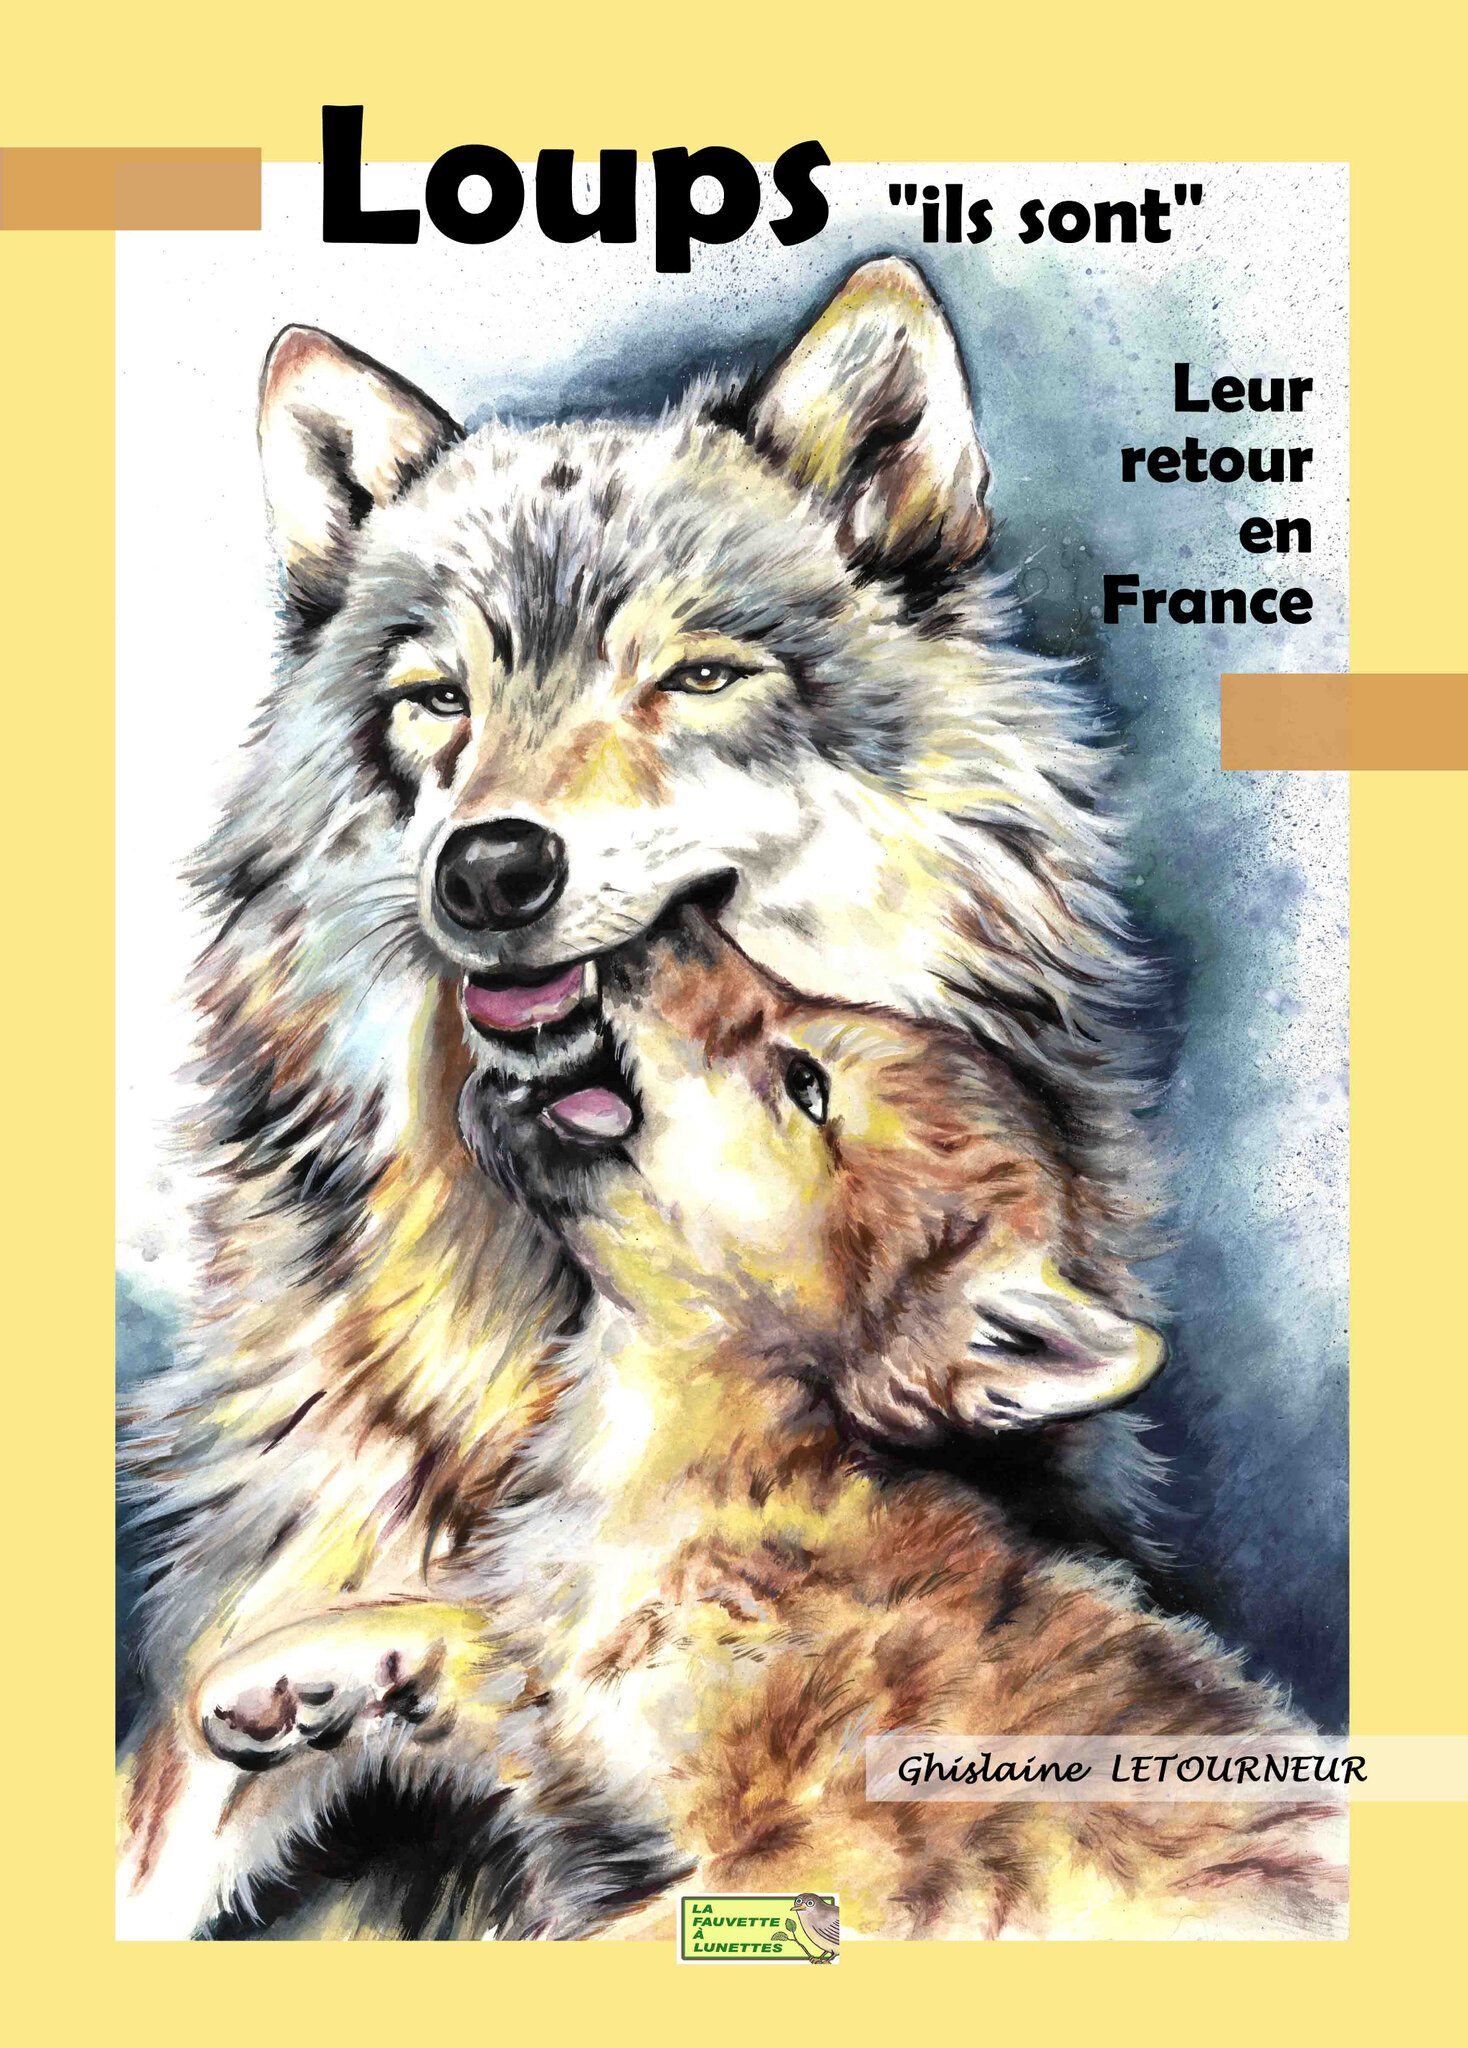 COUV 1 - Loups ils sont - Leur retour en France Ghislaine Letourneur